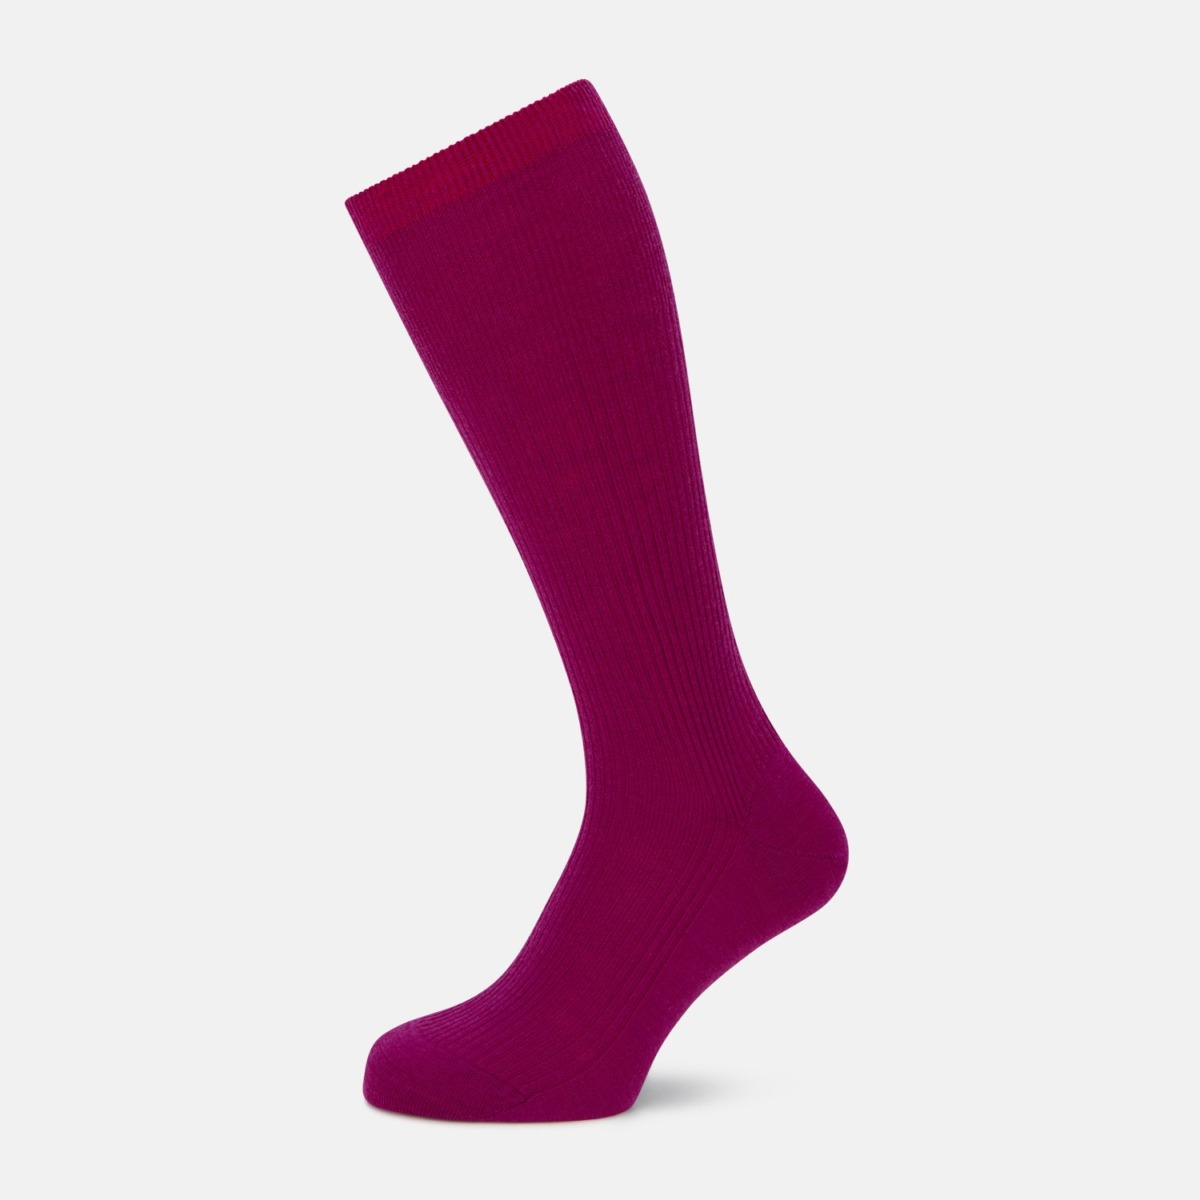 Men's Socks in Purple Turnbull And Asser - Turnbull & Asser GOOFASH